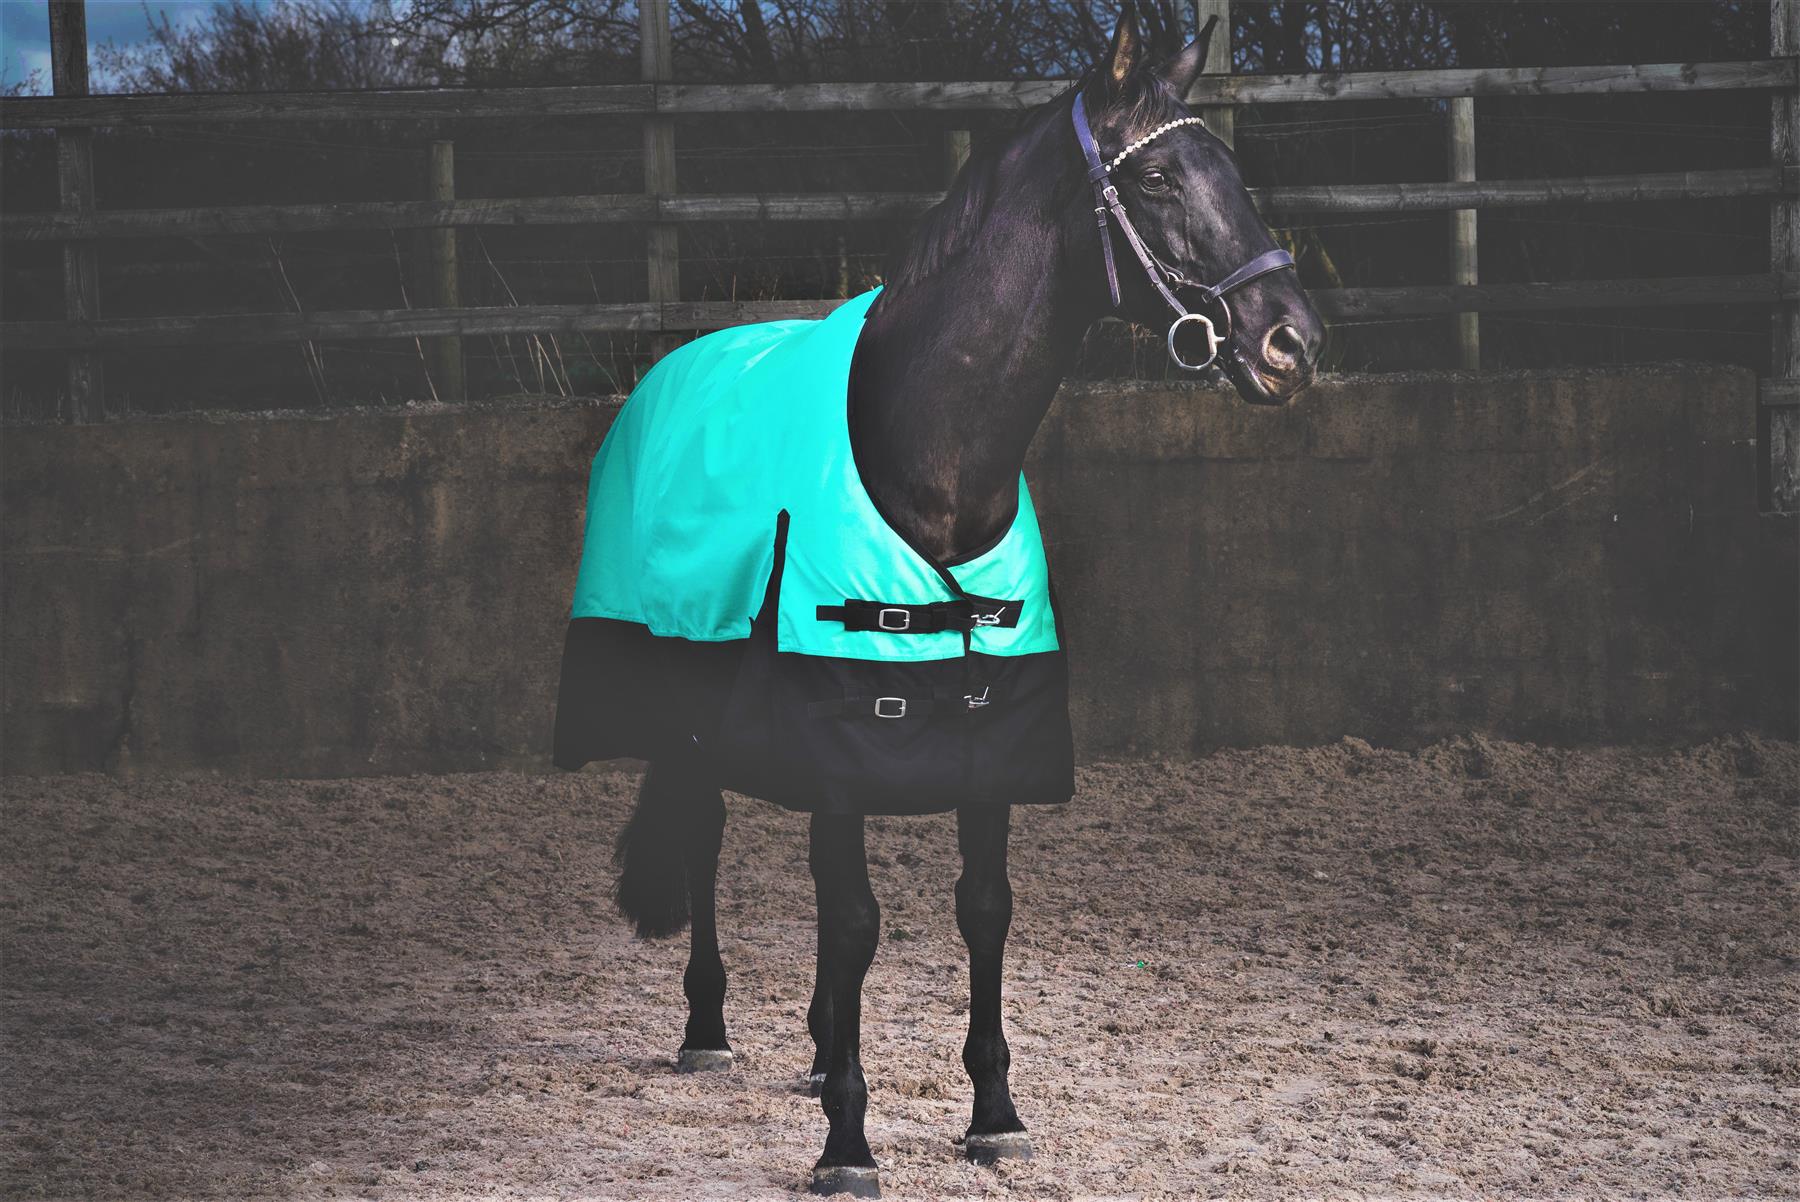 Lightweight Horse Turnout Rainsheet Waterproof 600D Ripstop Green/Black 5'6-6'9